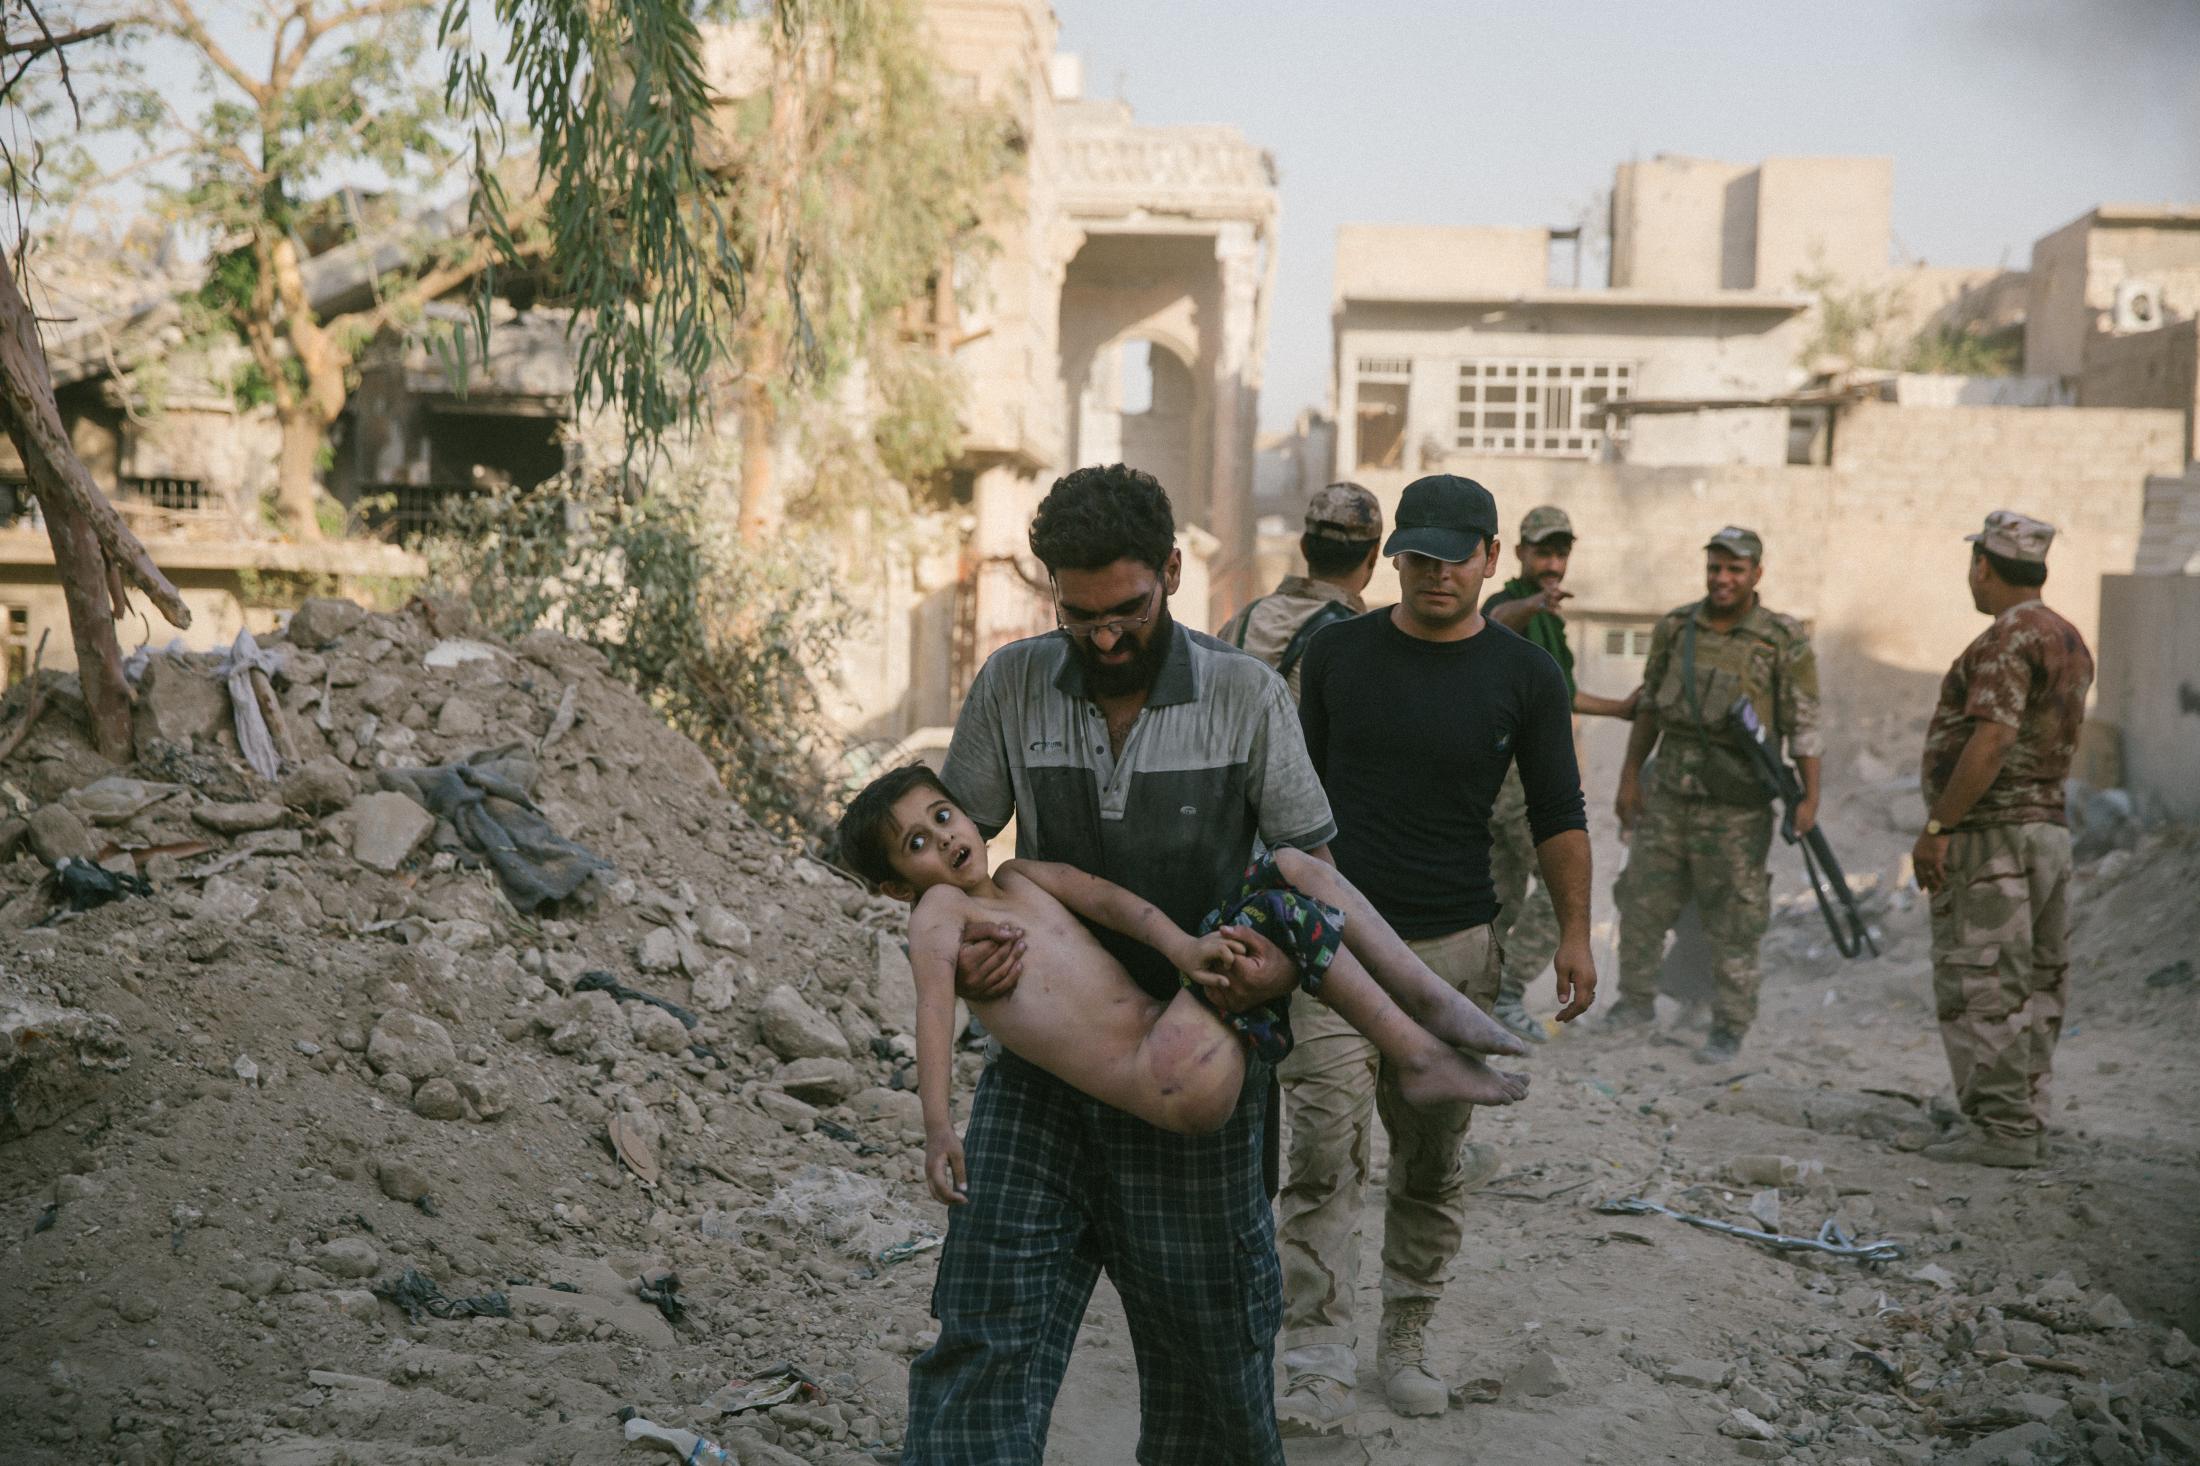 Till we die (Mosul)